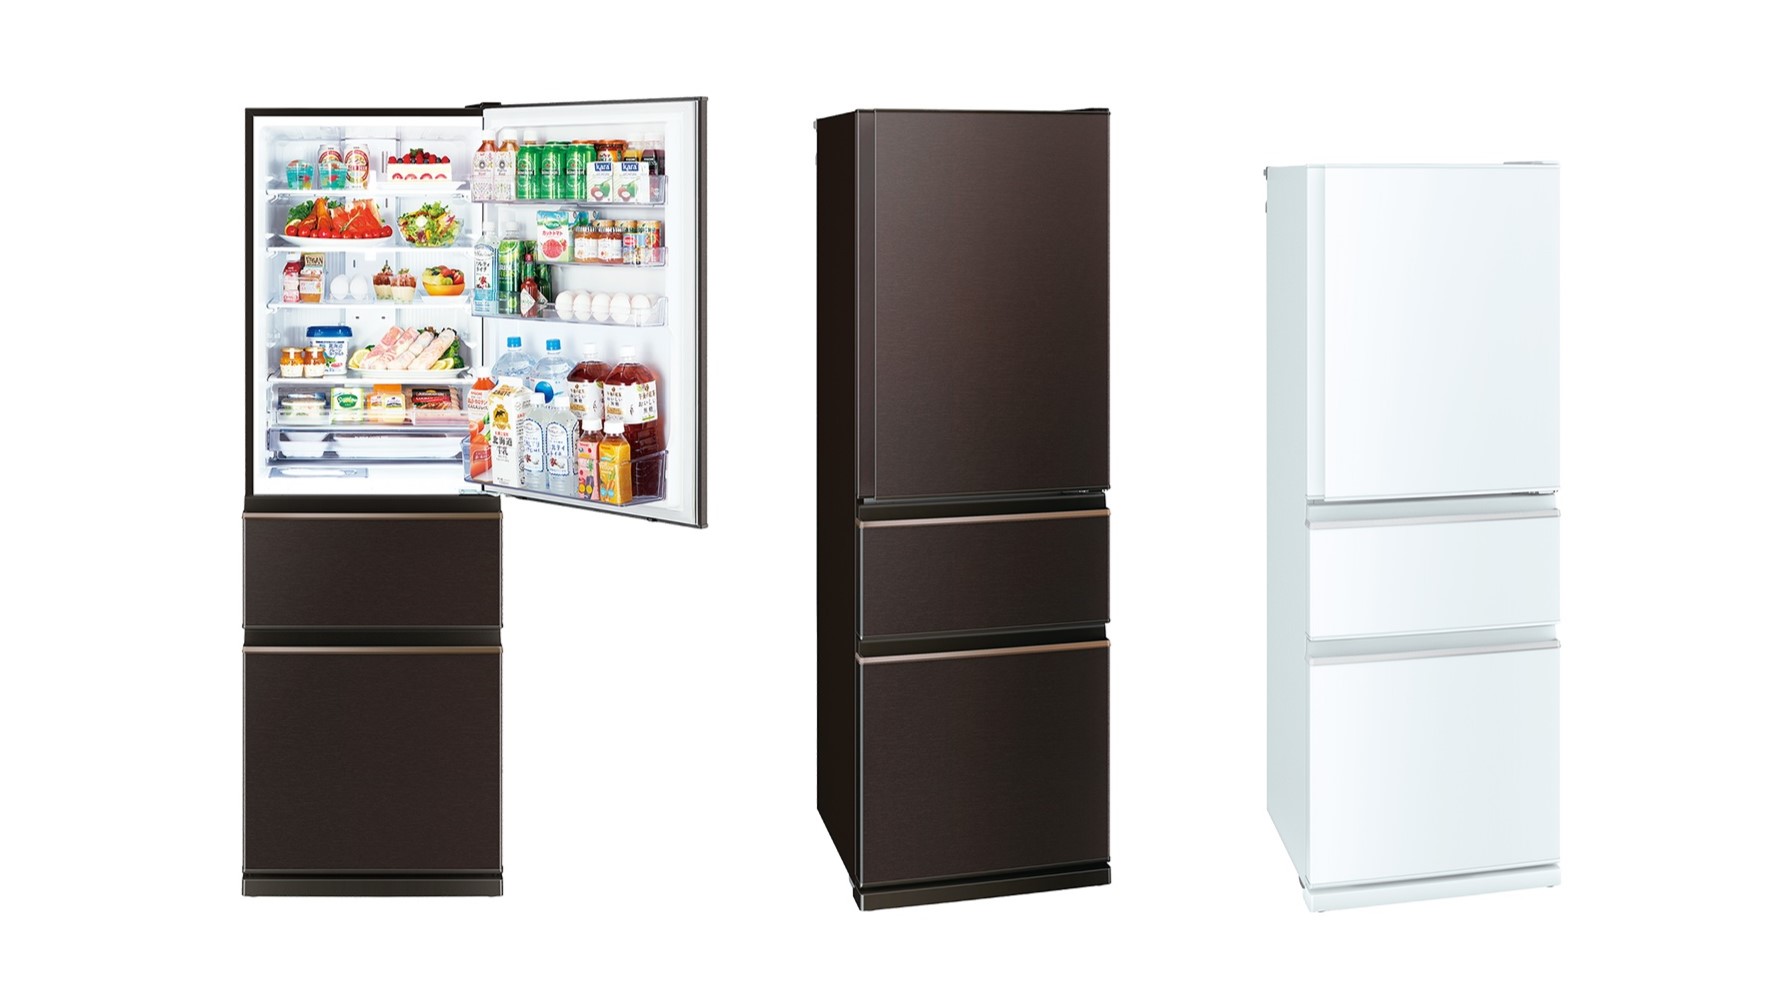 三菱ノンフロン冷凍冷蔵庫 2012年製 400L - キッチン家電